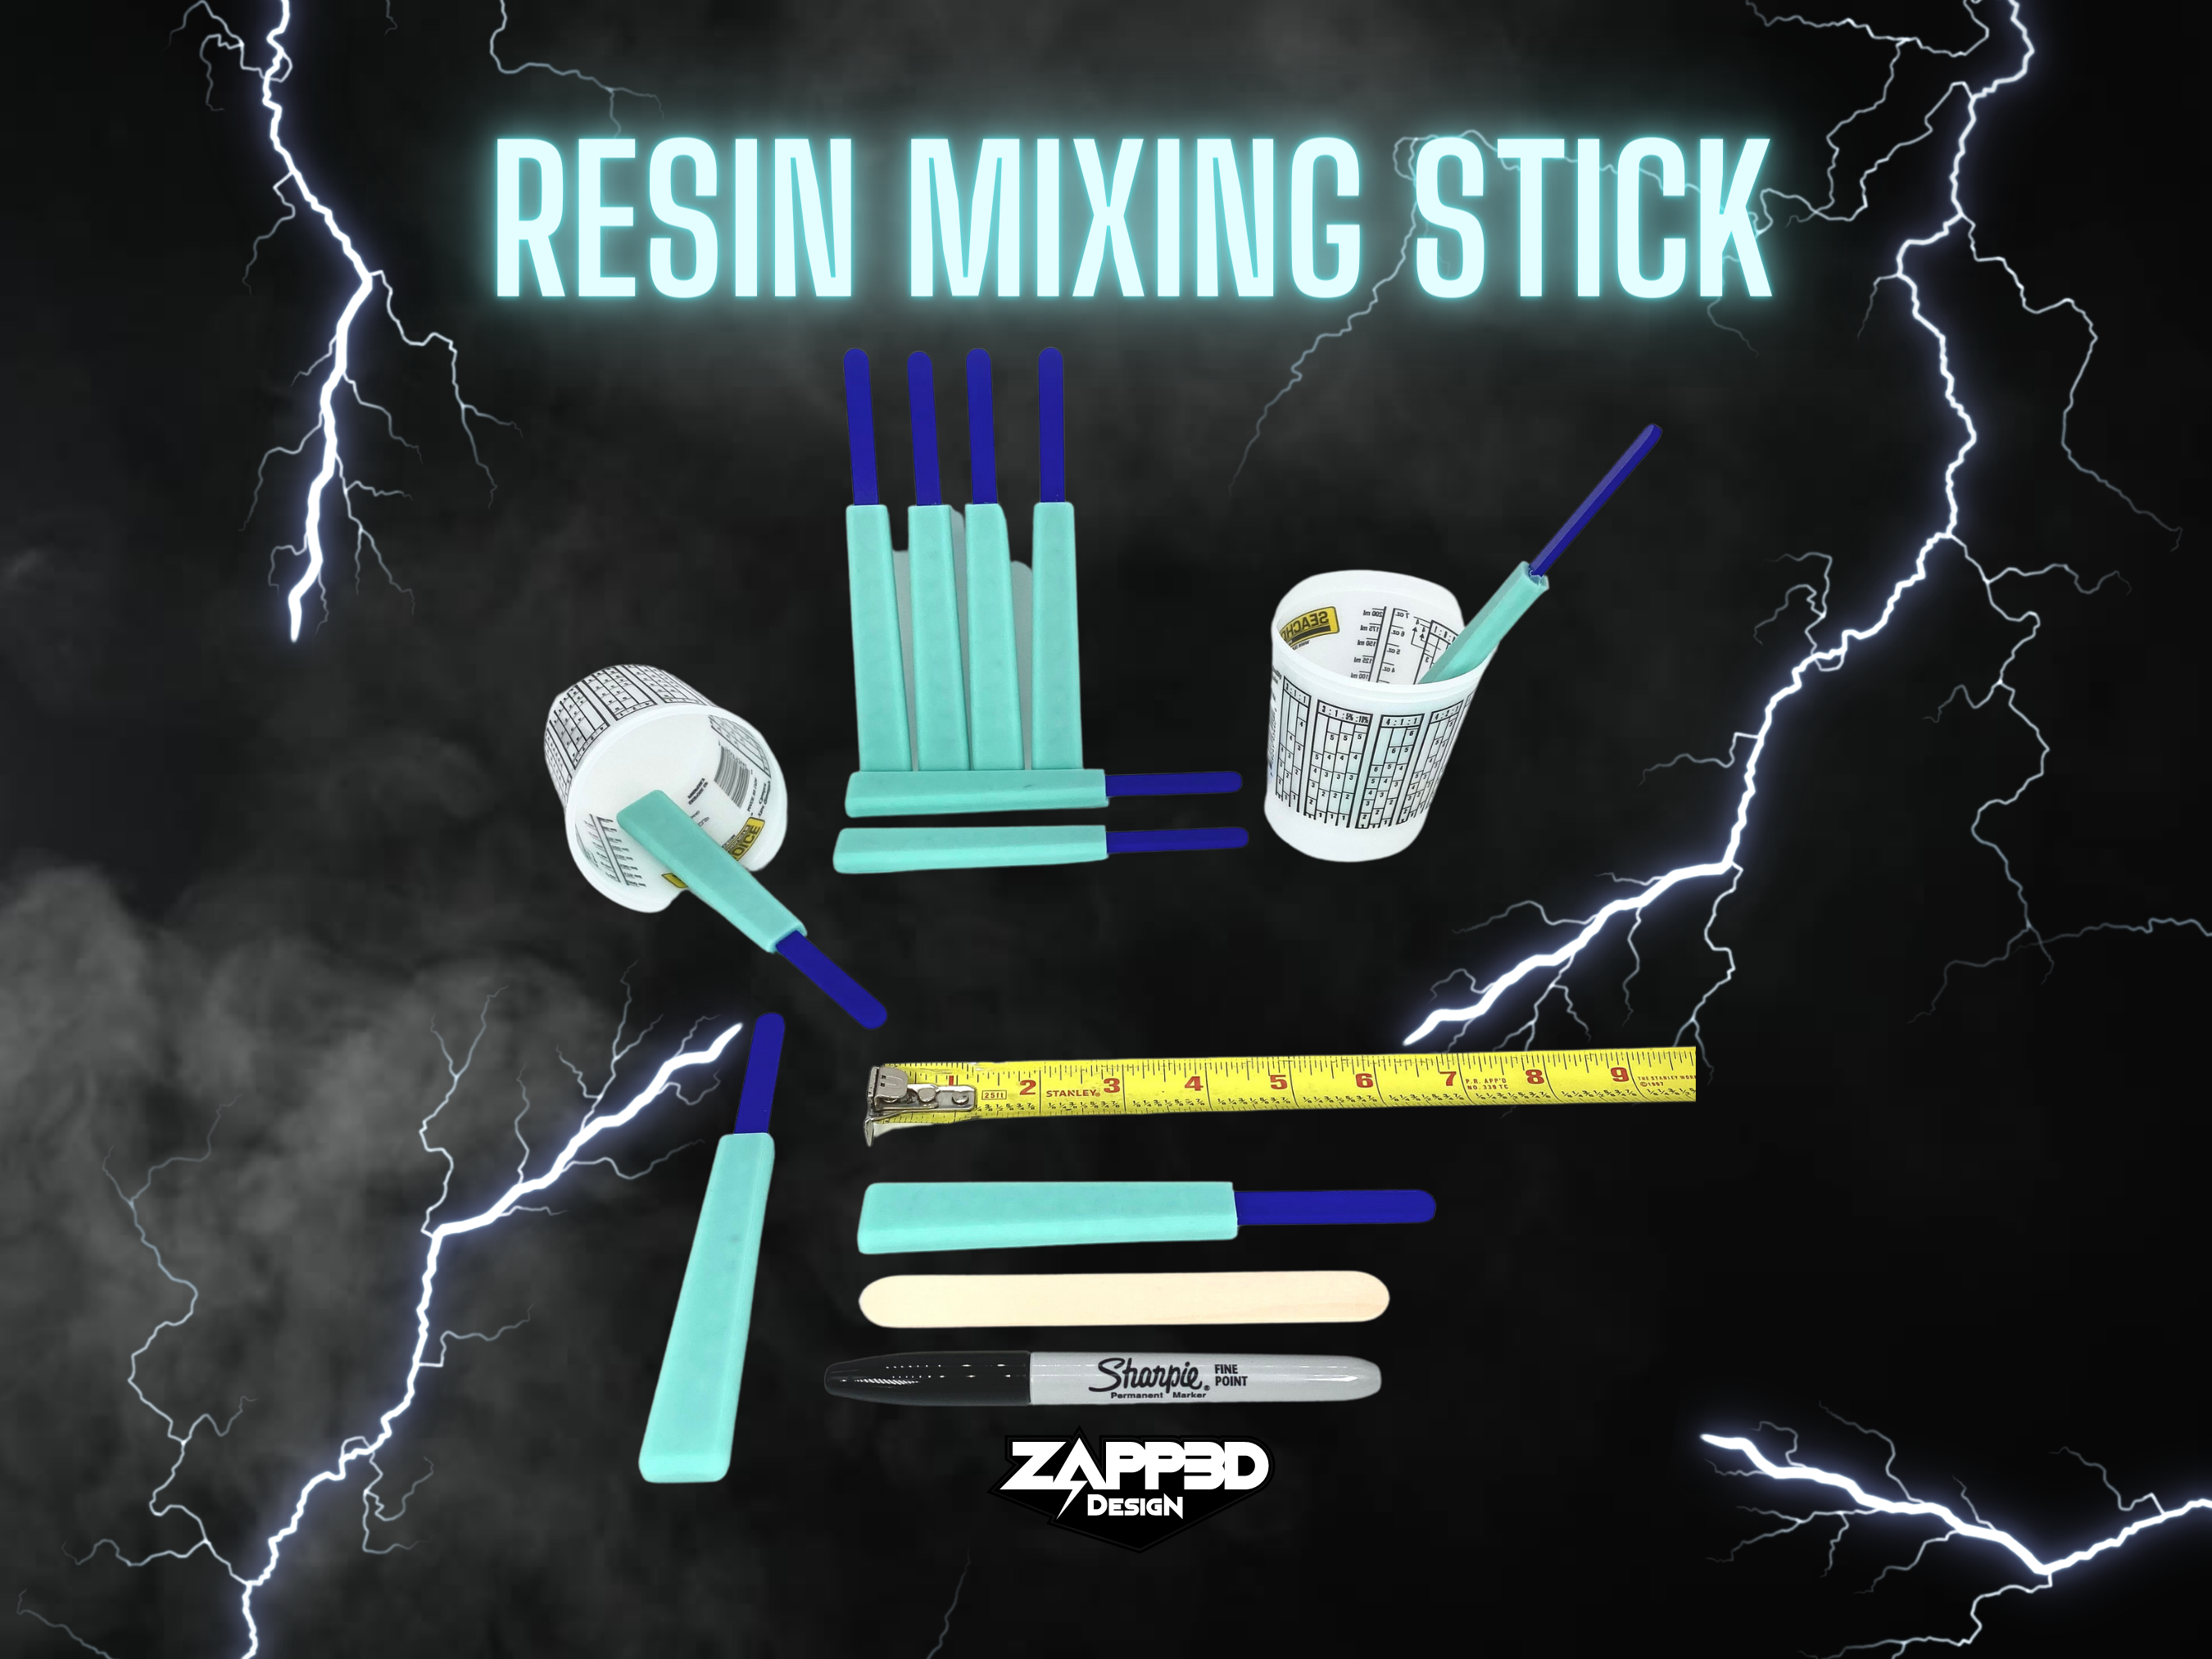 Epoxy Resin Stirring Sticks Set of 5 - Reusable Easy to Clean